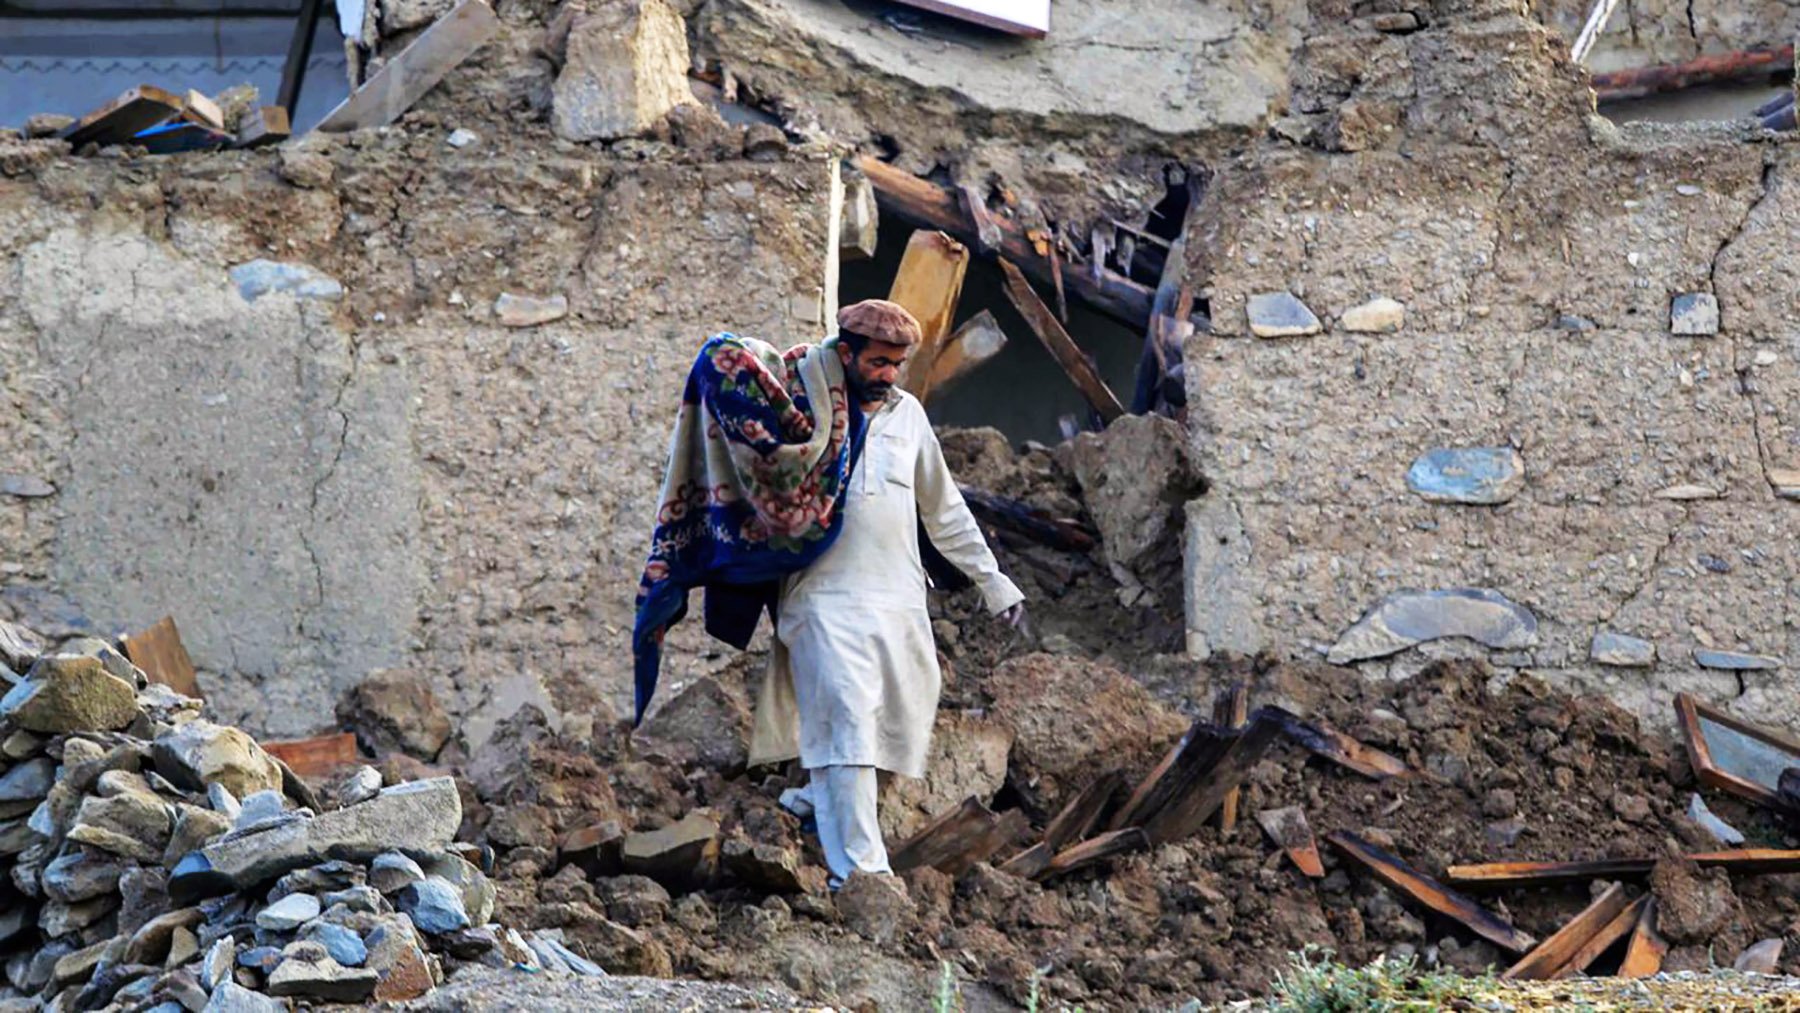 Сильное землетрясение произошло в спарте. Землетрясение в Афганистане (июнь 2022). Землетрясение в Афганистане 2022. Землетрясение в Афганистане 2023. Афганистан землетрясение Кабул.